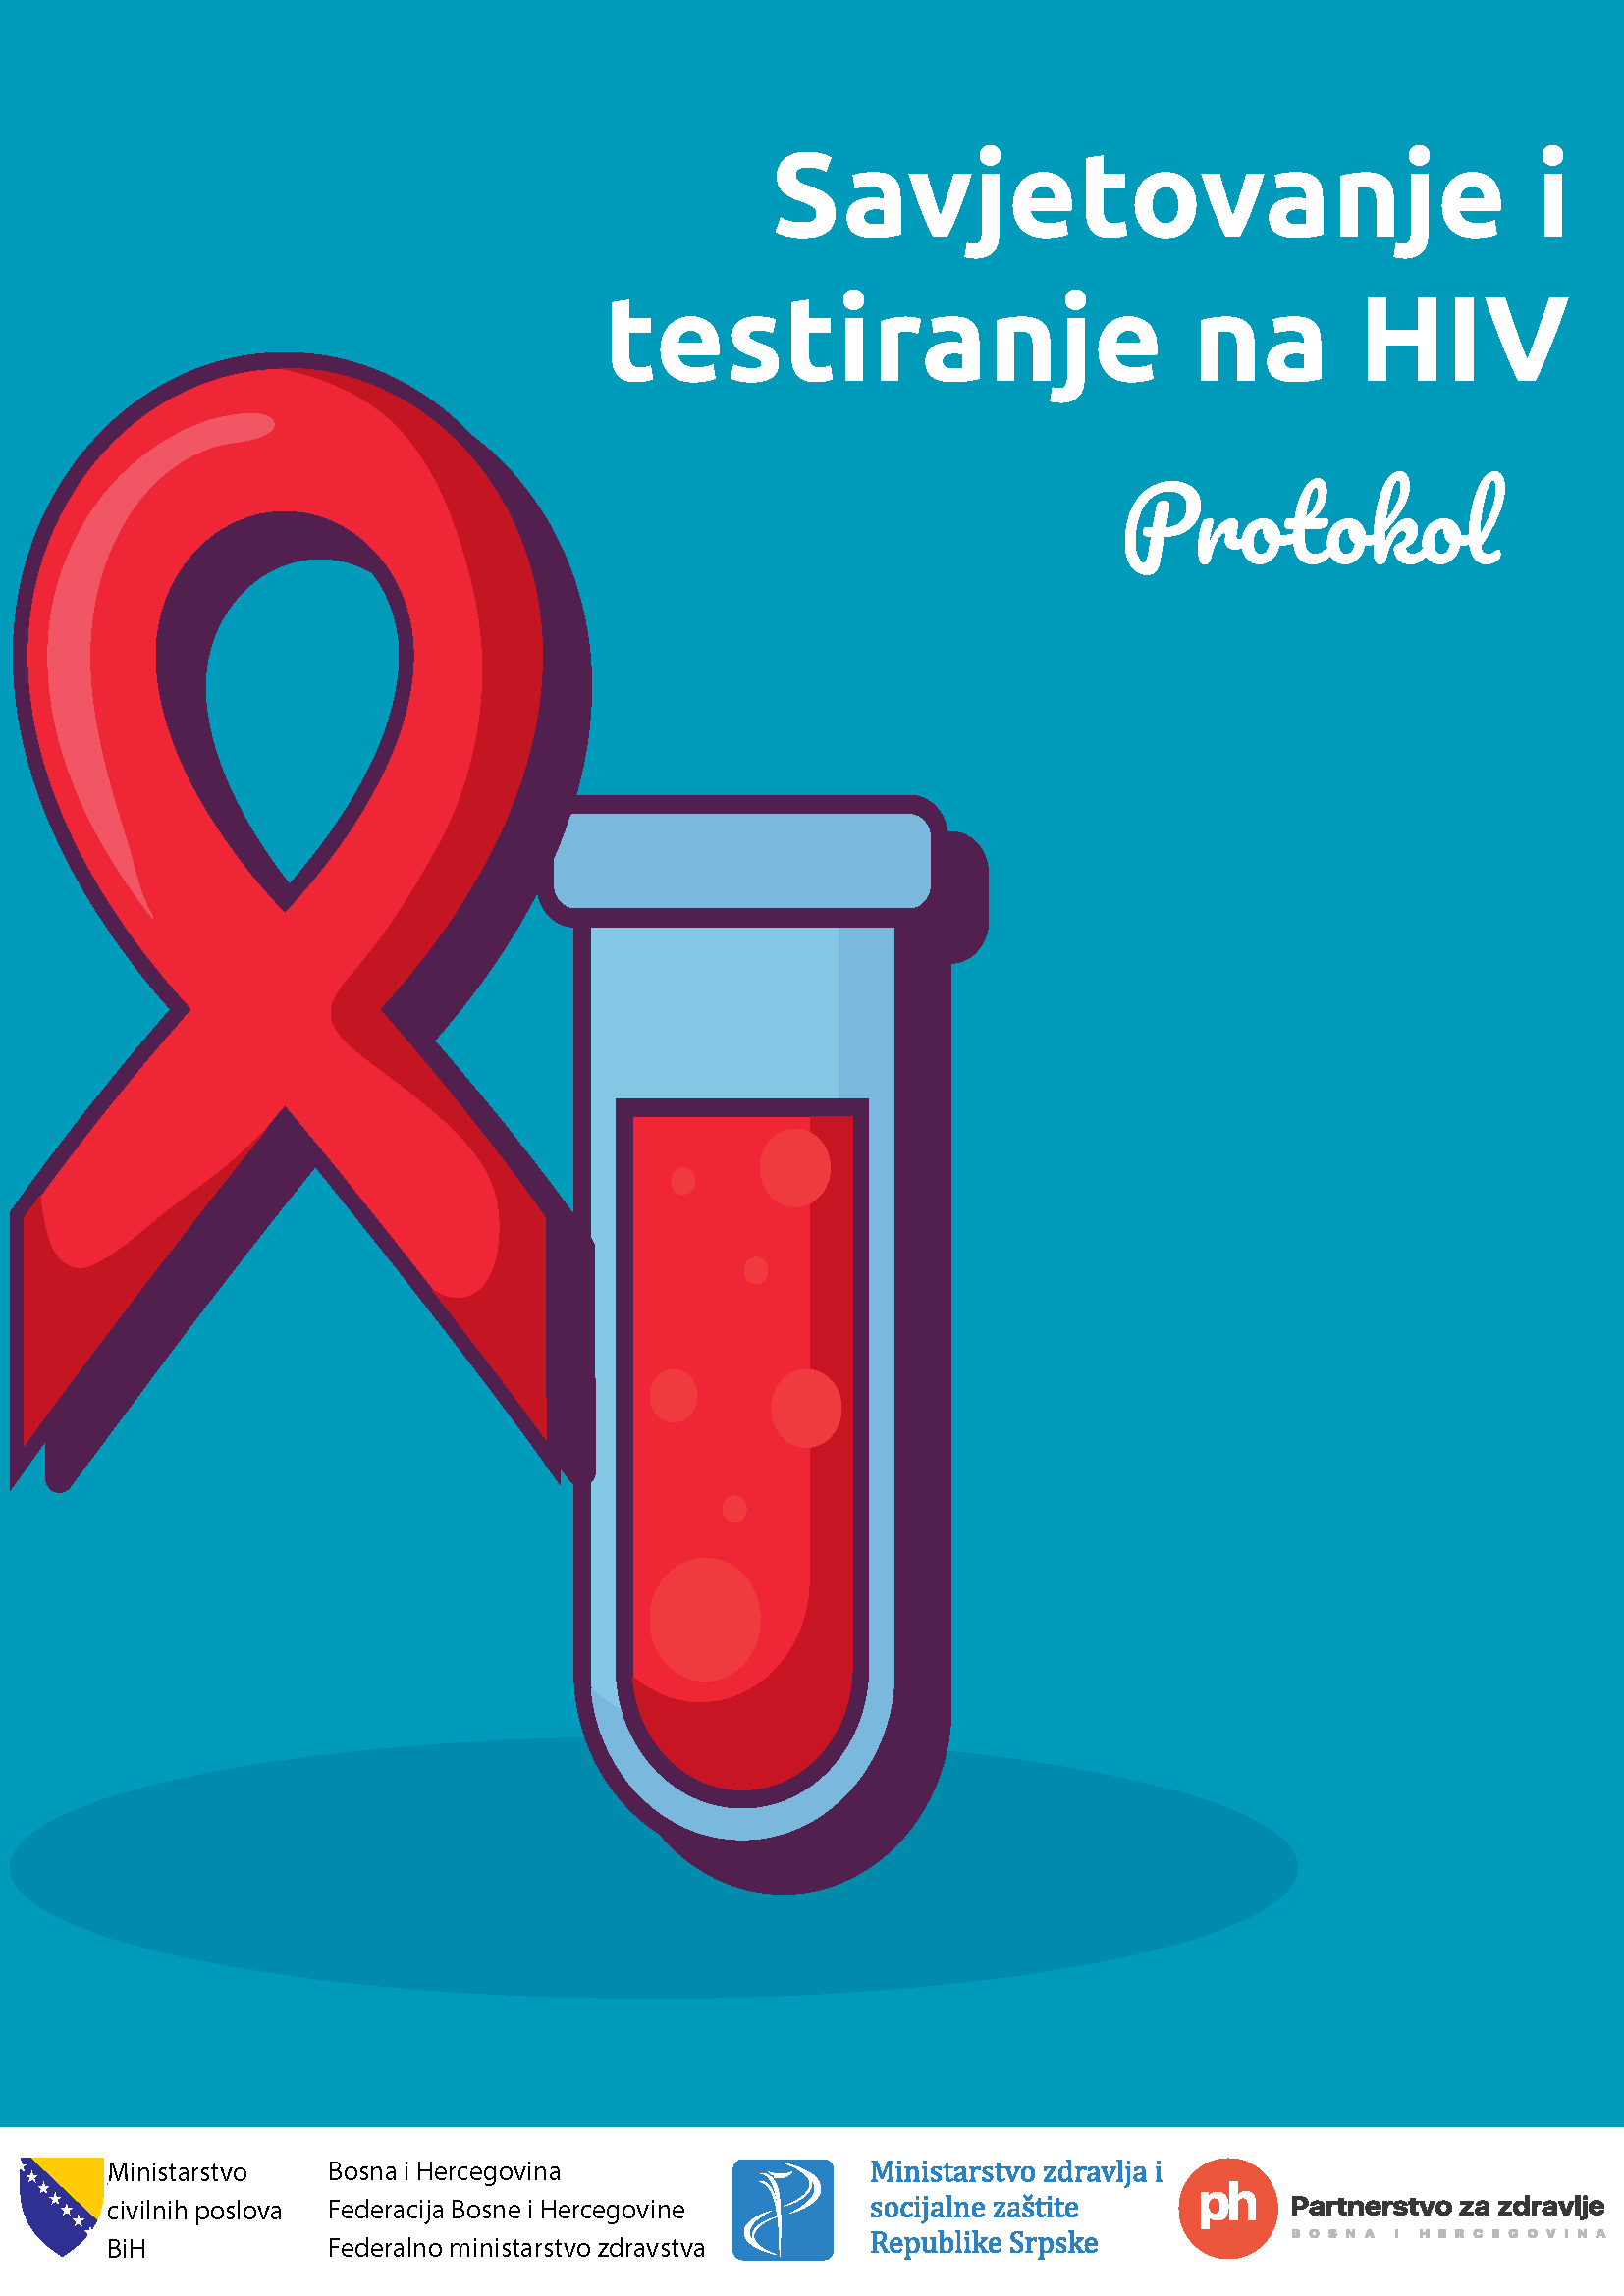 Protokol - Savjetovanje i testiranje na HIV - Bosanski jezik, 2020. godina